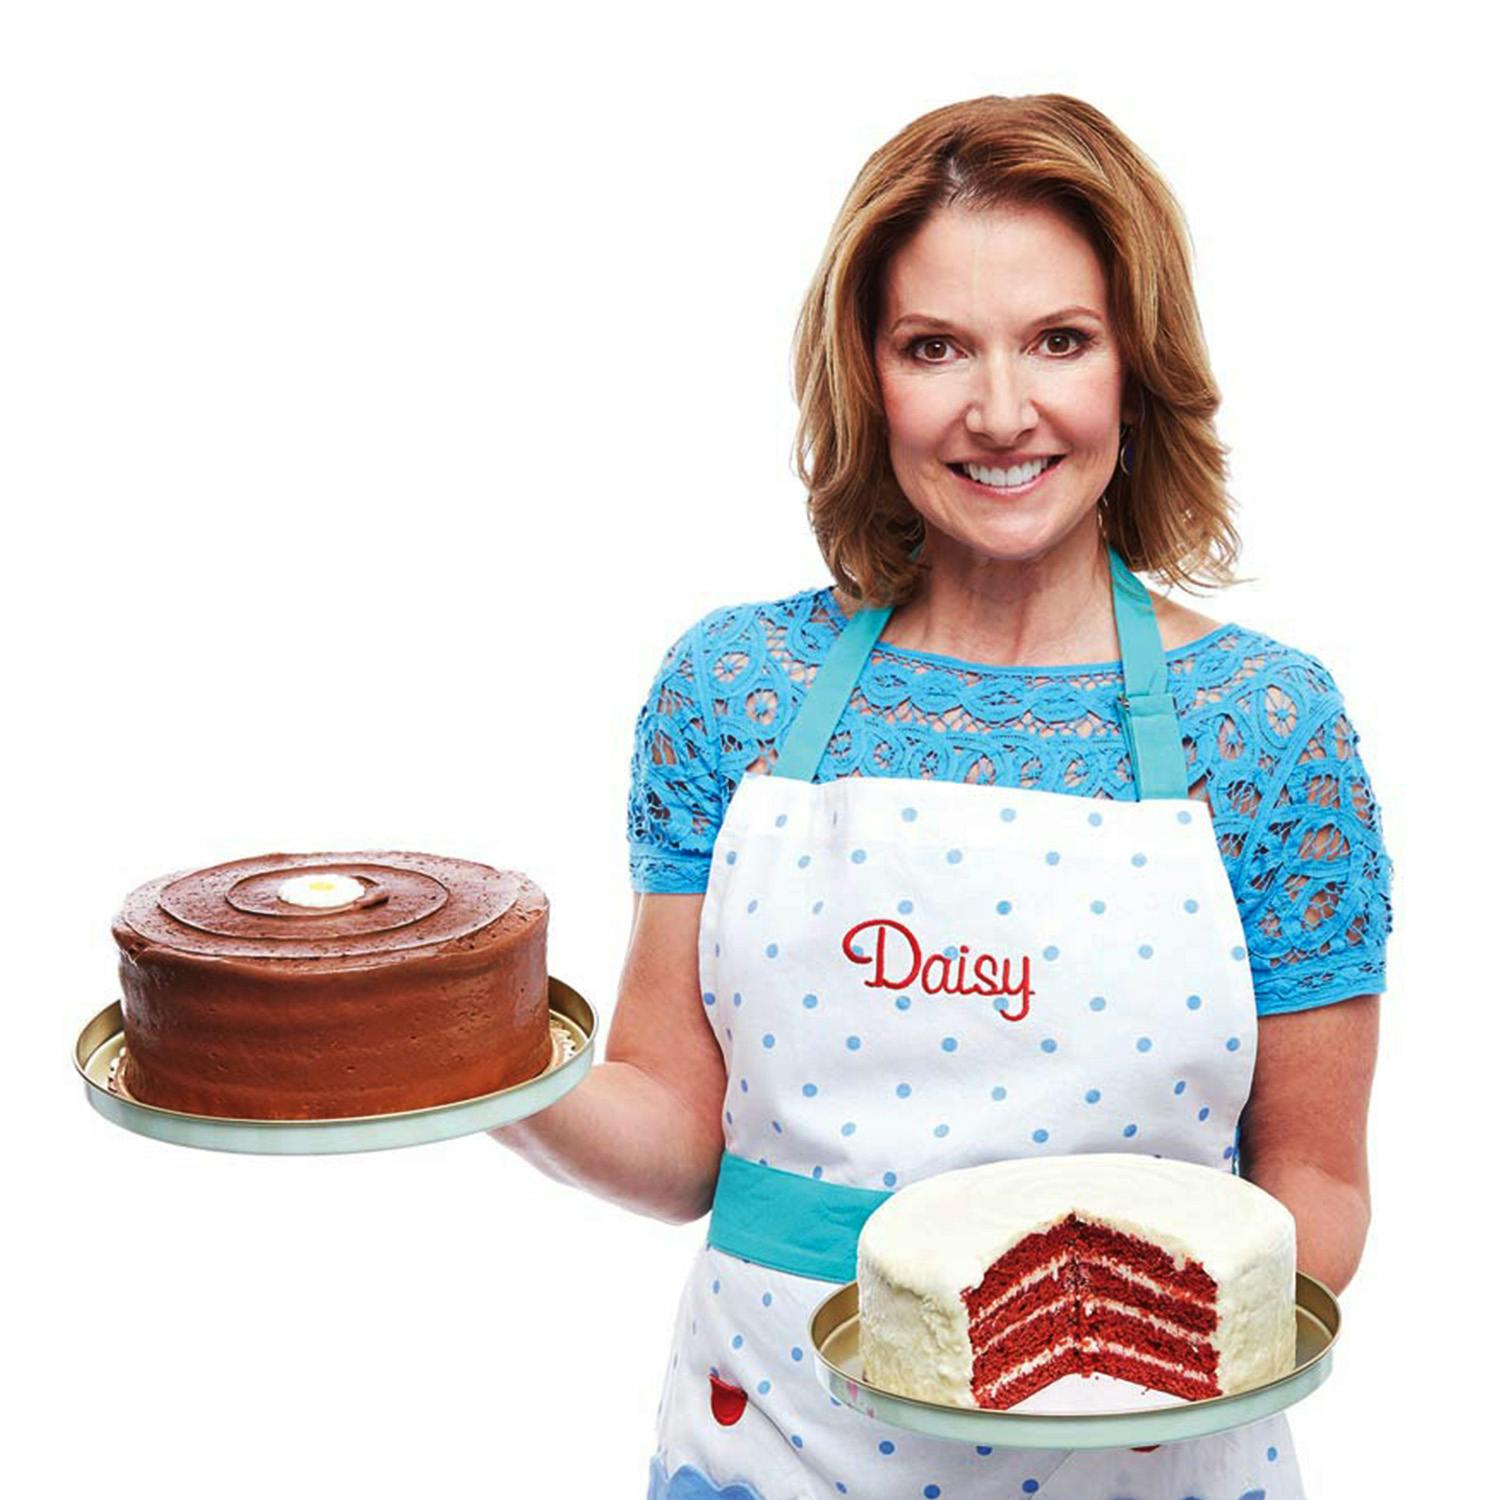 Daisy cakes net worth 2020